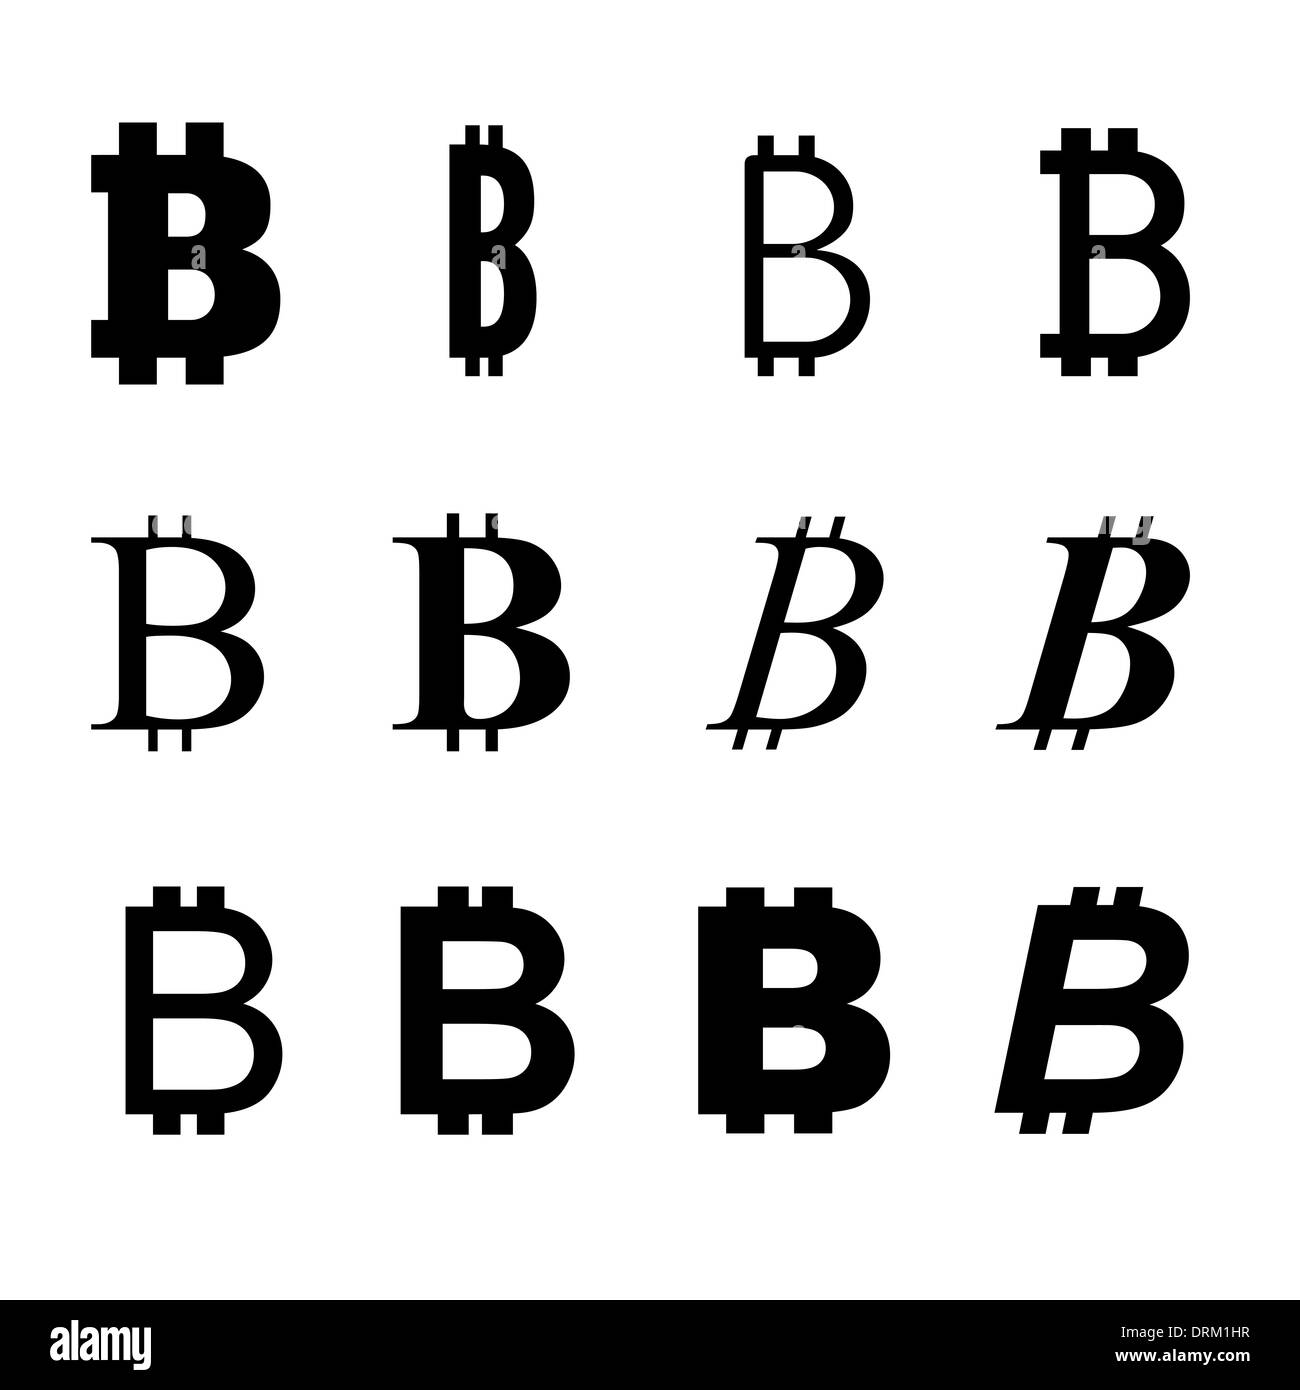 Bitcoin symbol variation Stock Photo